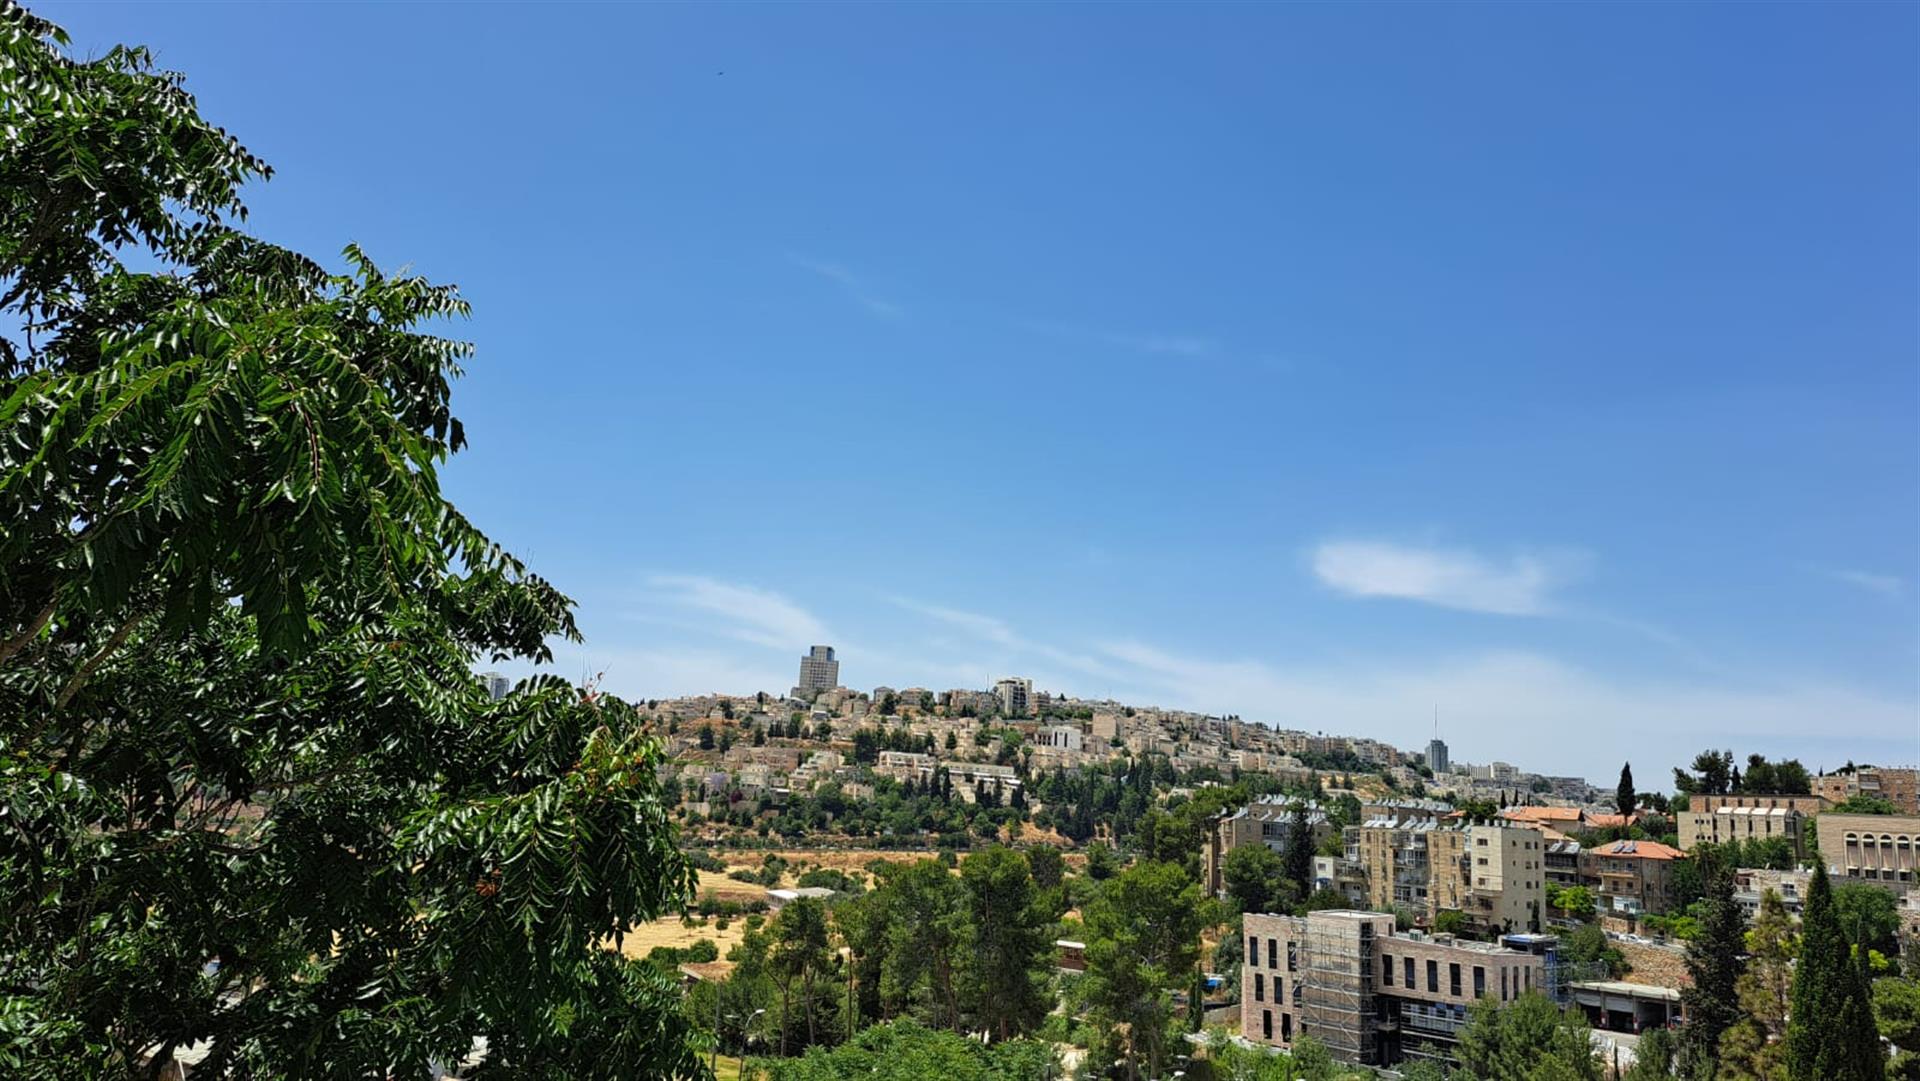 A vendre un bel appartement dans le quartier de Katamonim à Jérusalem !